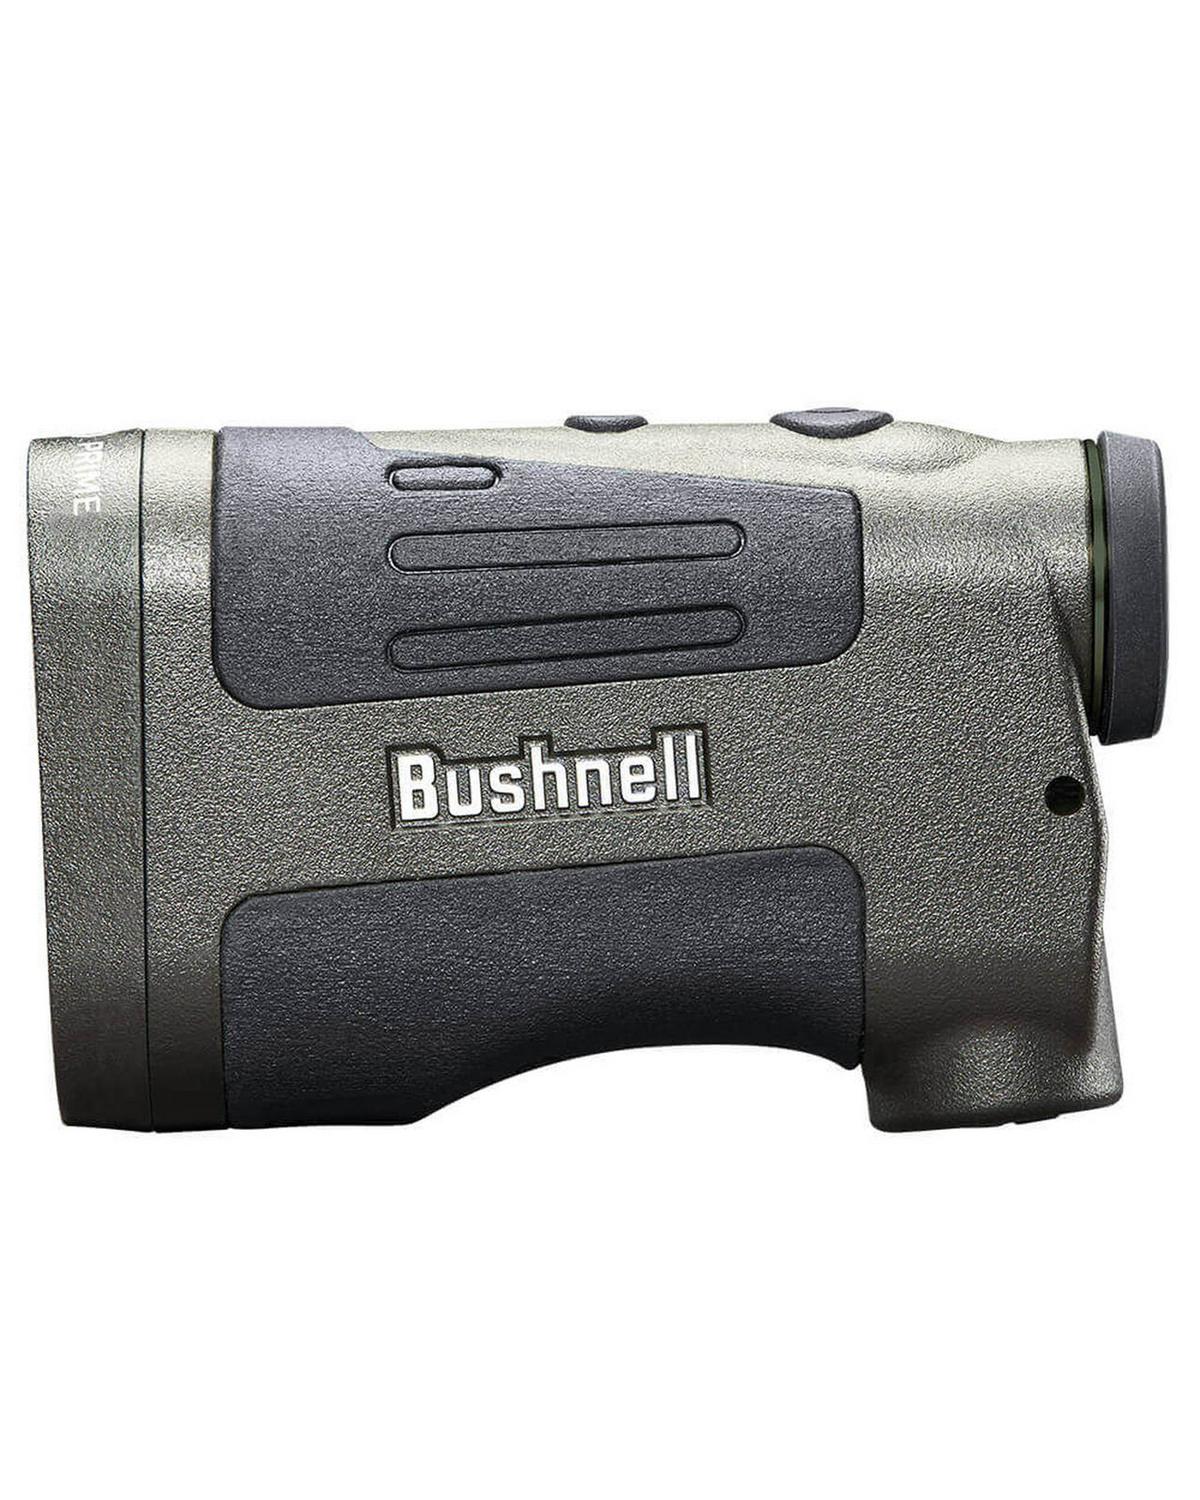 Bushnell Prime 1300 Laser Rangefinder -  Black